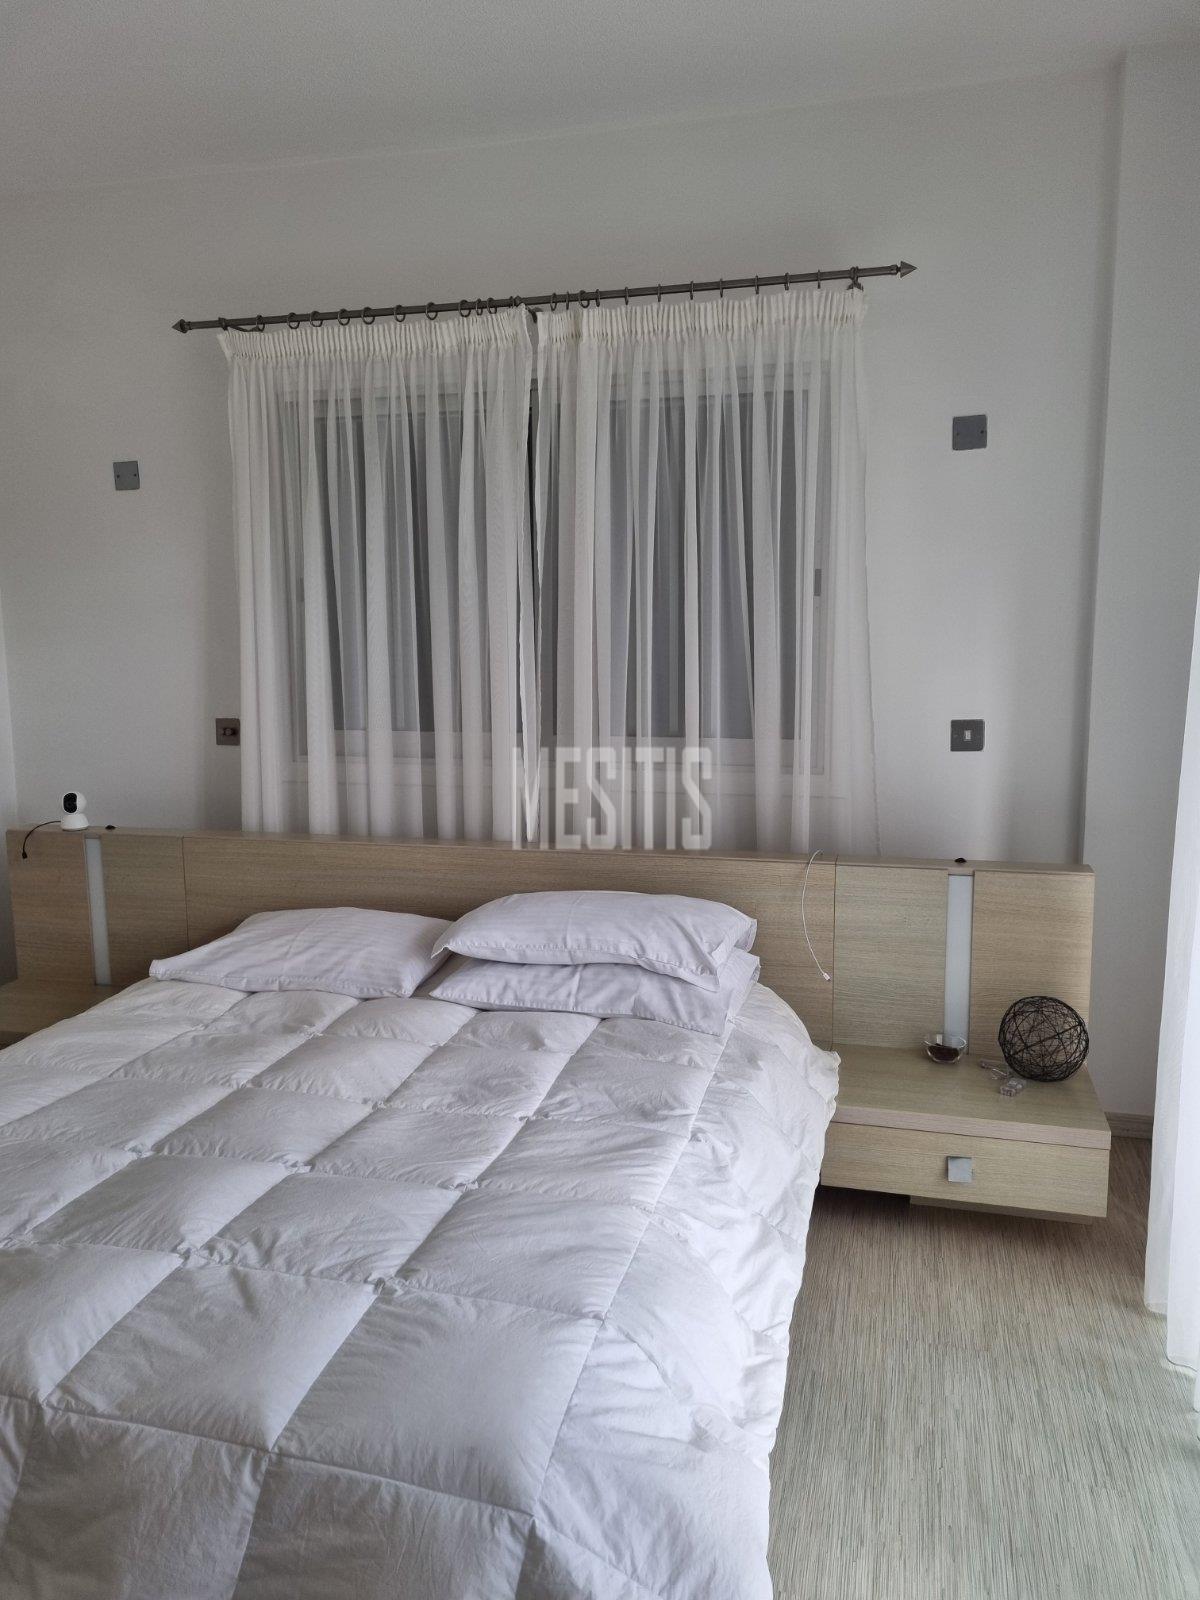 3 Βedroom Τop Floor Apartment For Sale In A Prime Location With Large Spaces And Incredible Aesthetics Αnd Views To All Of Nicosia #30861-11